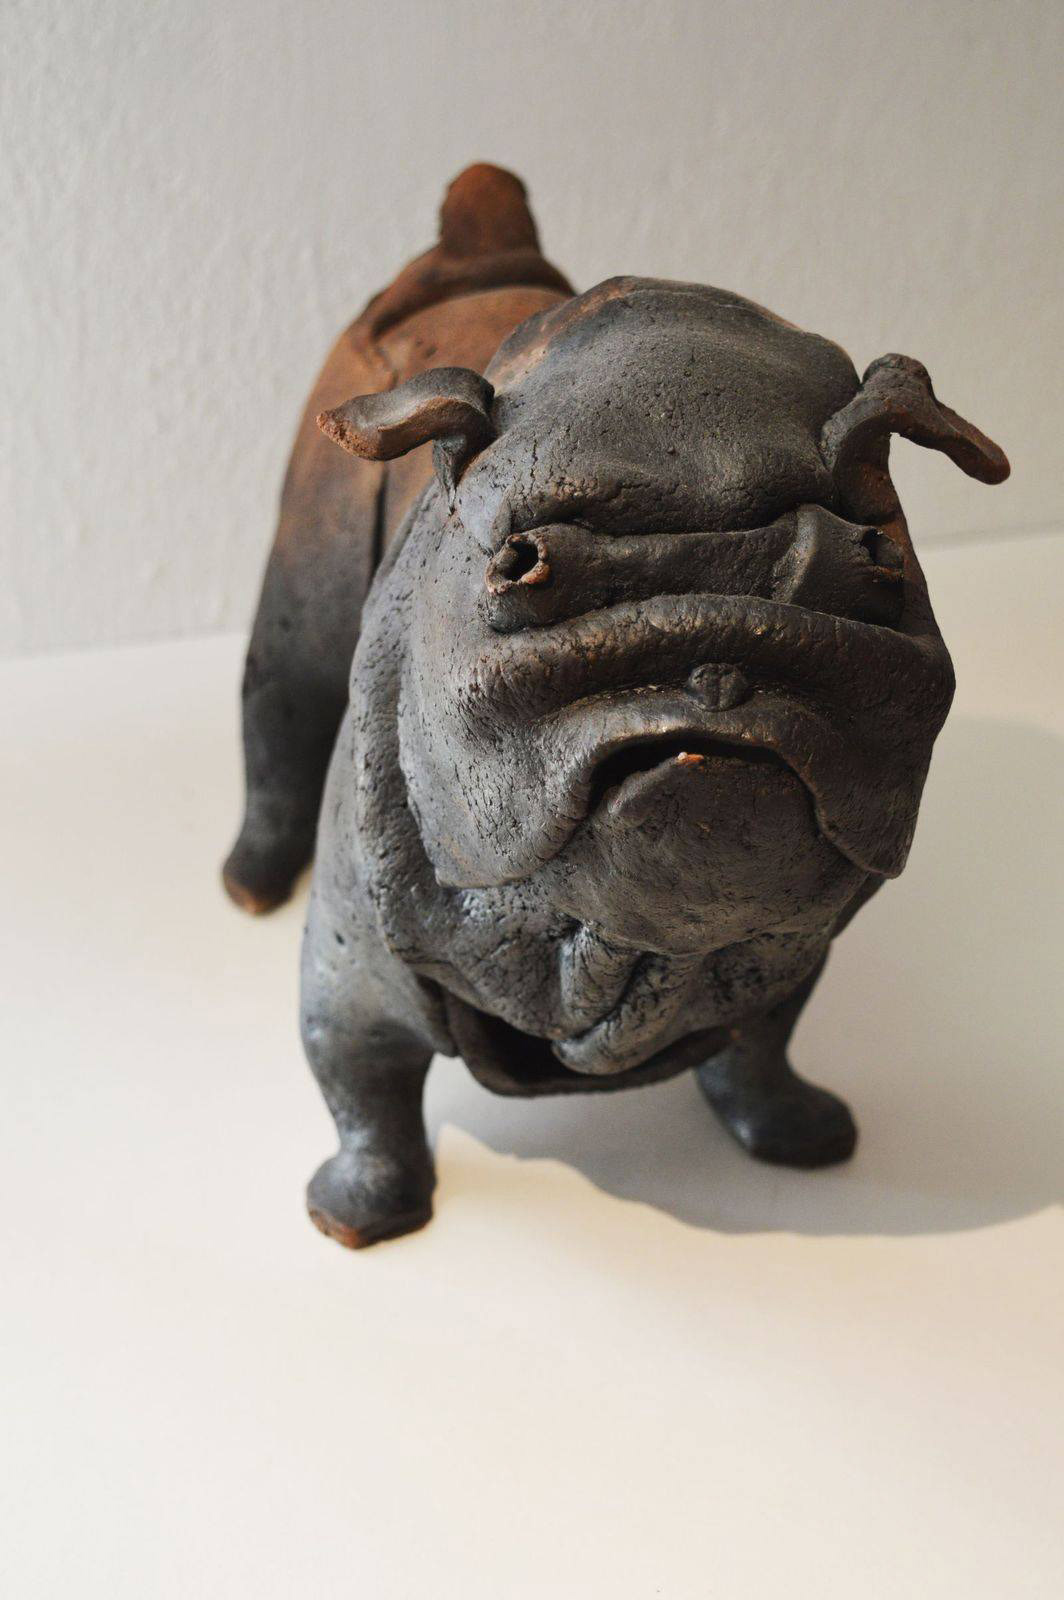 Racu fired ceramic dog sculpture
